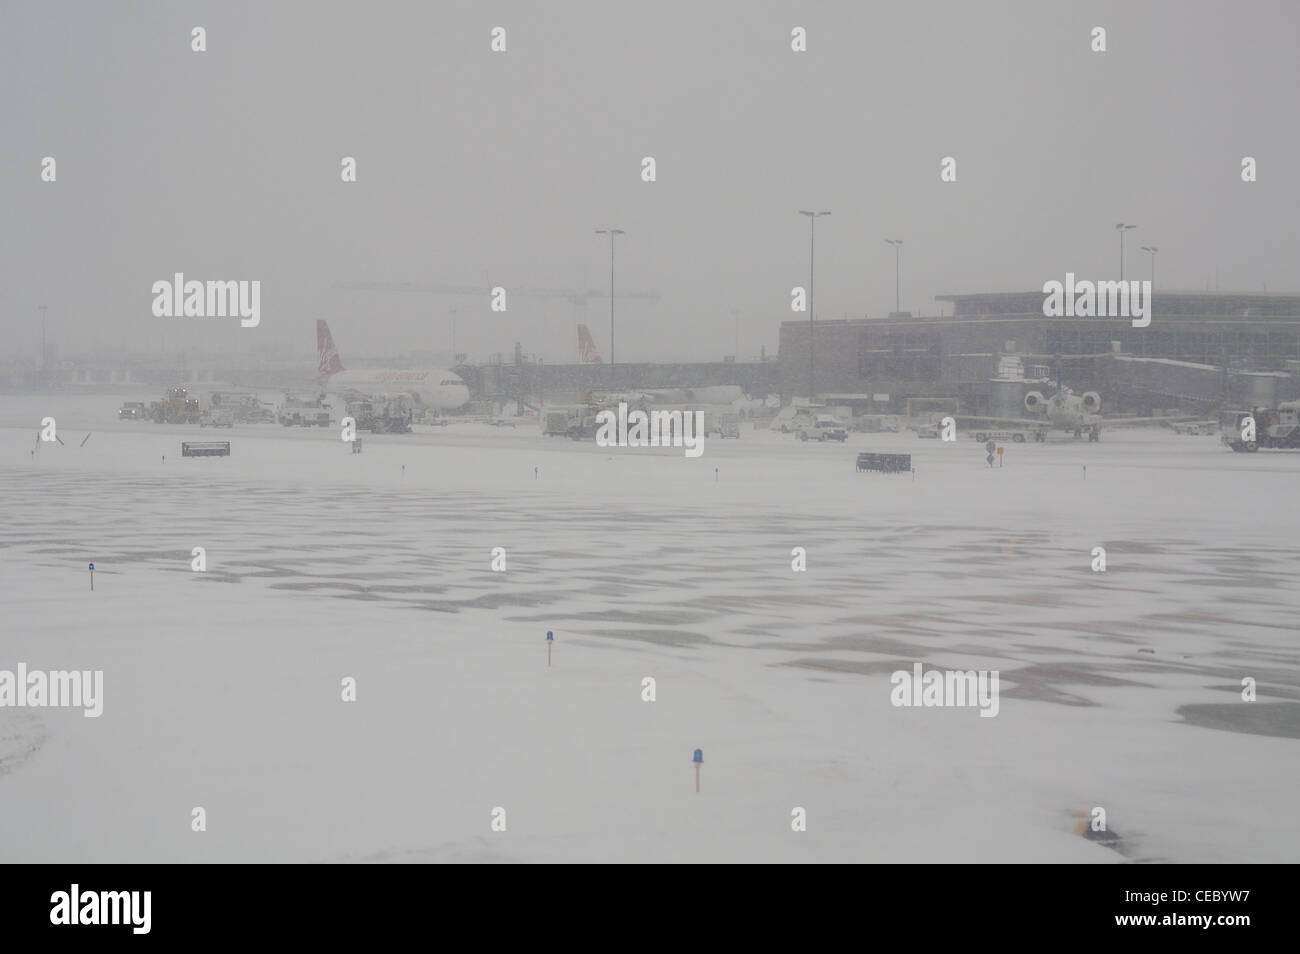 Flughafen in einem Schneesturm Stockfoto